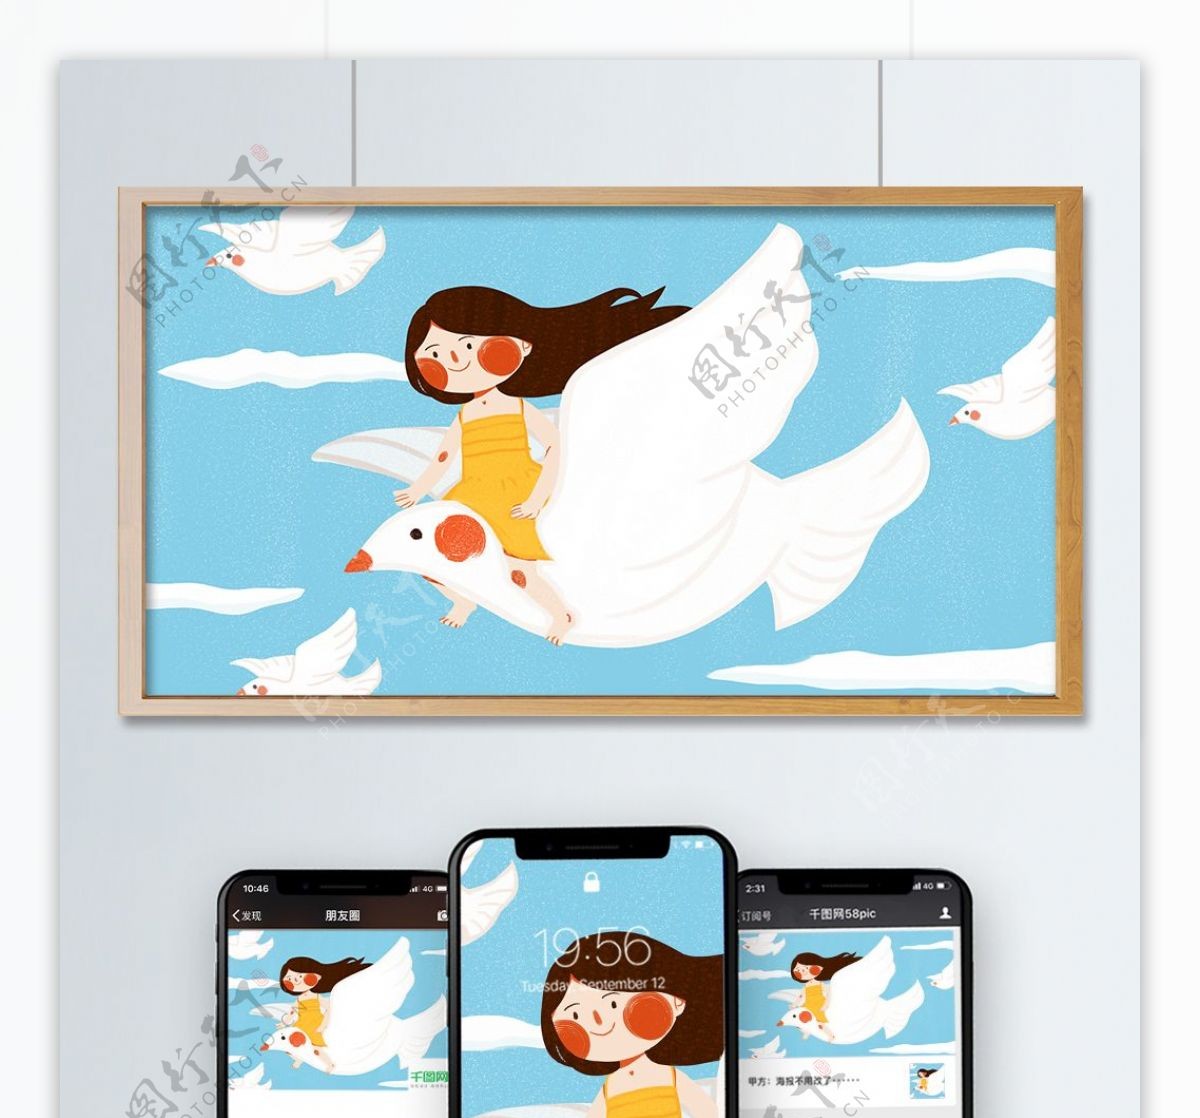 世界和平日少女和平鸽子可爱扁平原创插画